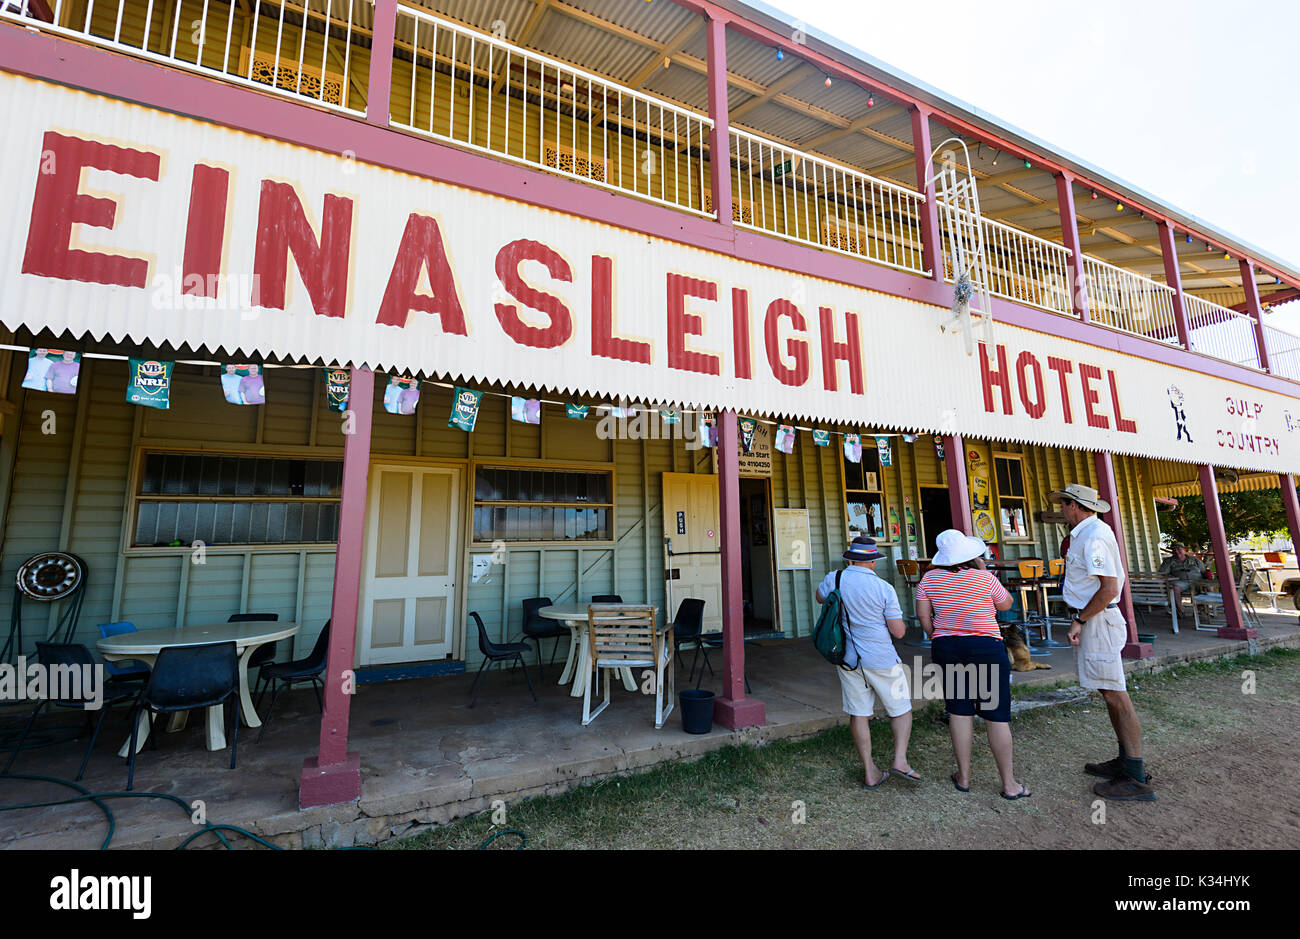 Historisches Einasleigh Hotel aus der Goldrauschzeit, Queensland, QLD, Australien Stockfoto